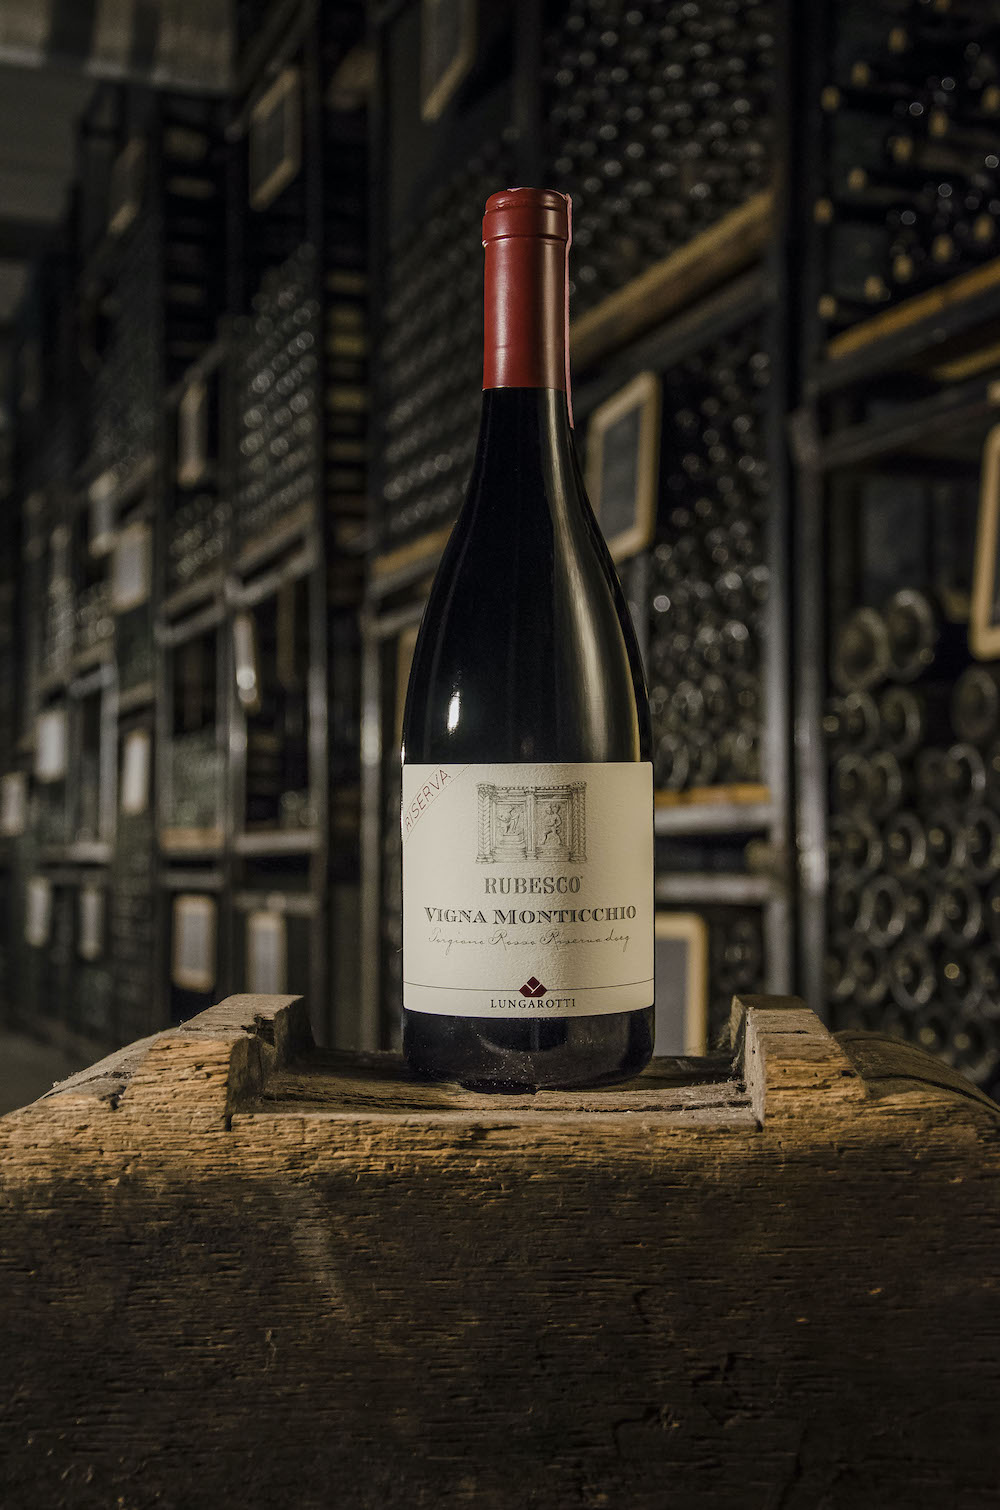 imagen 3 de Rubesco Riserva Vigna Monticchio 2018 by Lungarotti, uno de los mejores vinos de Italia.